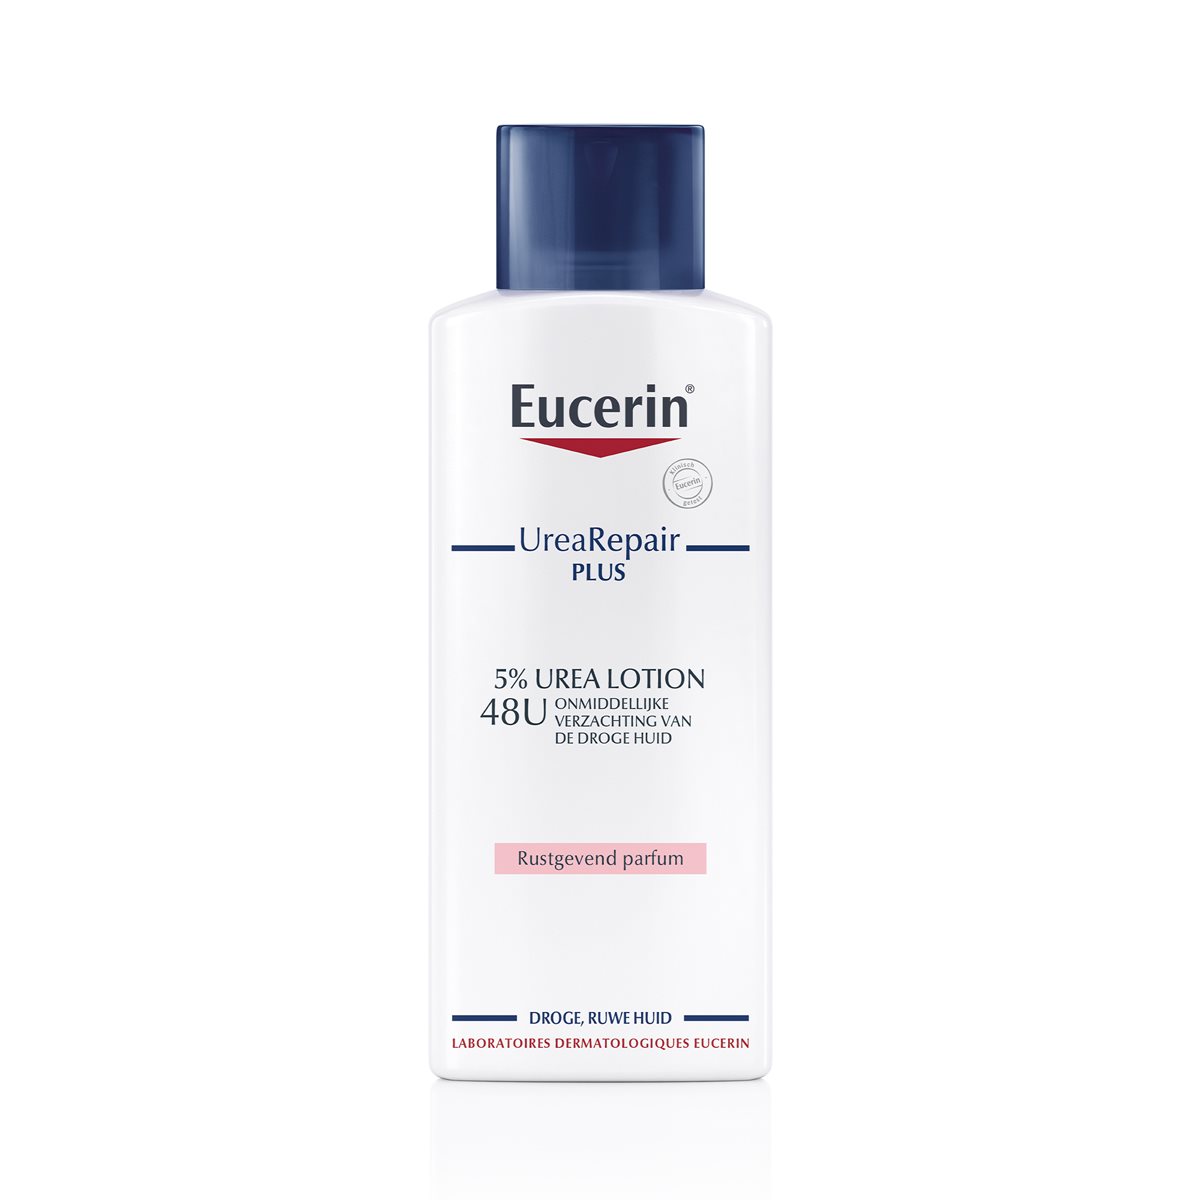 Hydraterende body lotion voor de droge huid van Eucerin